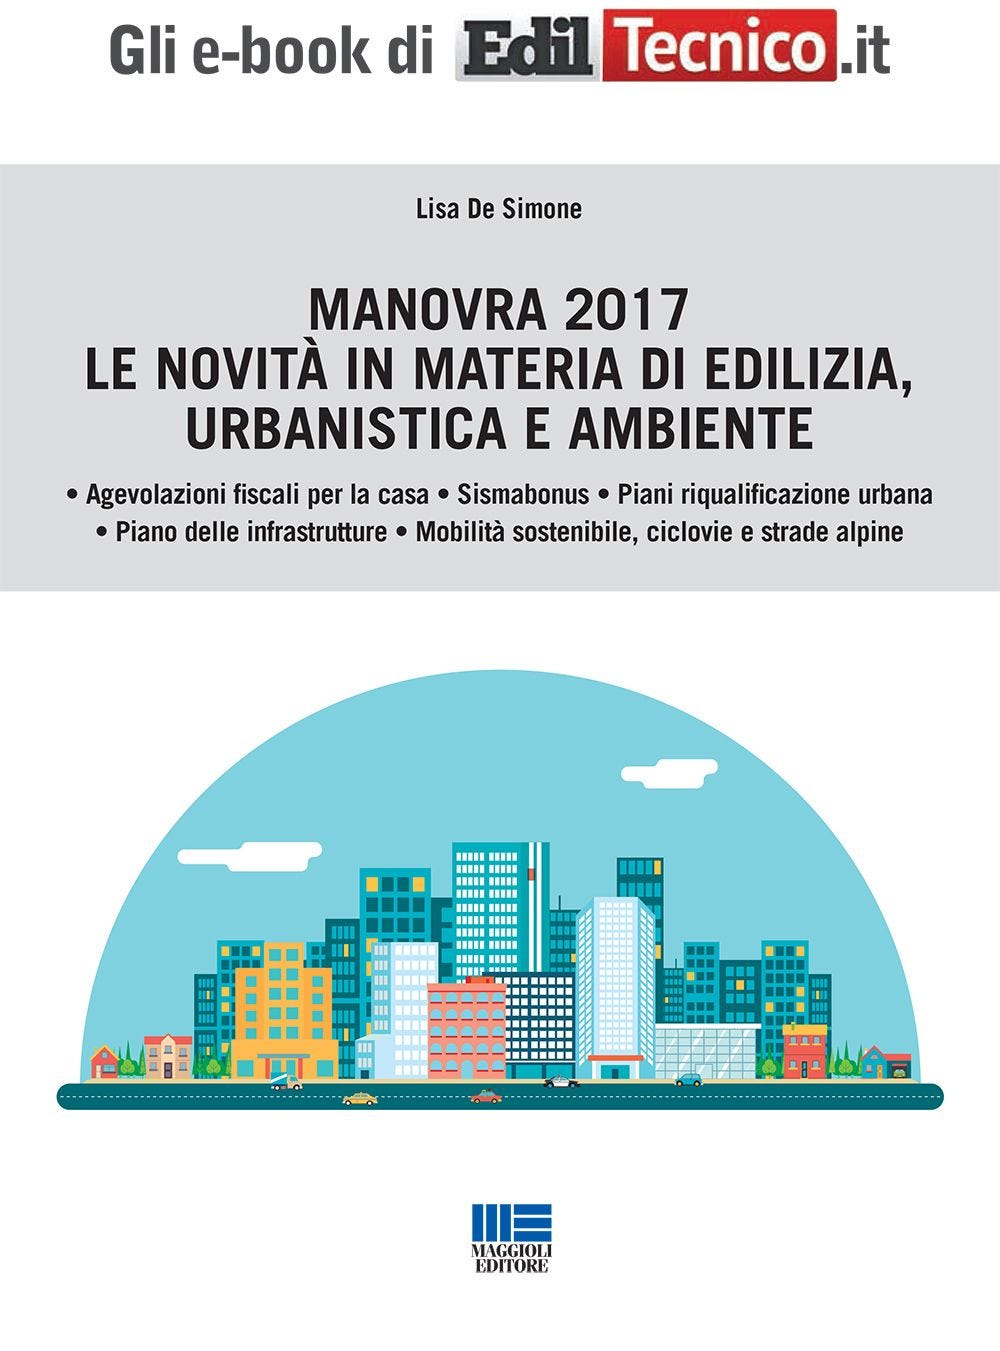 Manovra Finanziaria 2017 - Le novità in materia di edilizia, urbanistica e ambiente